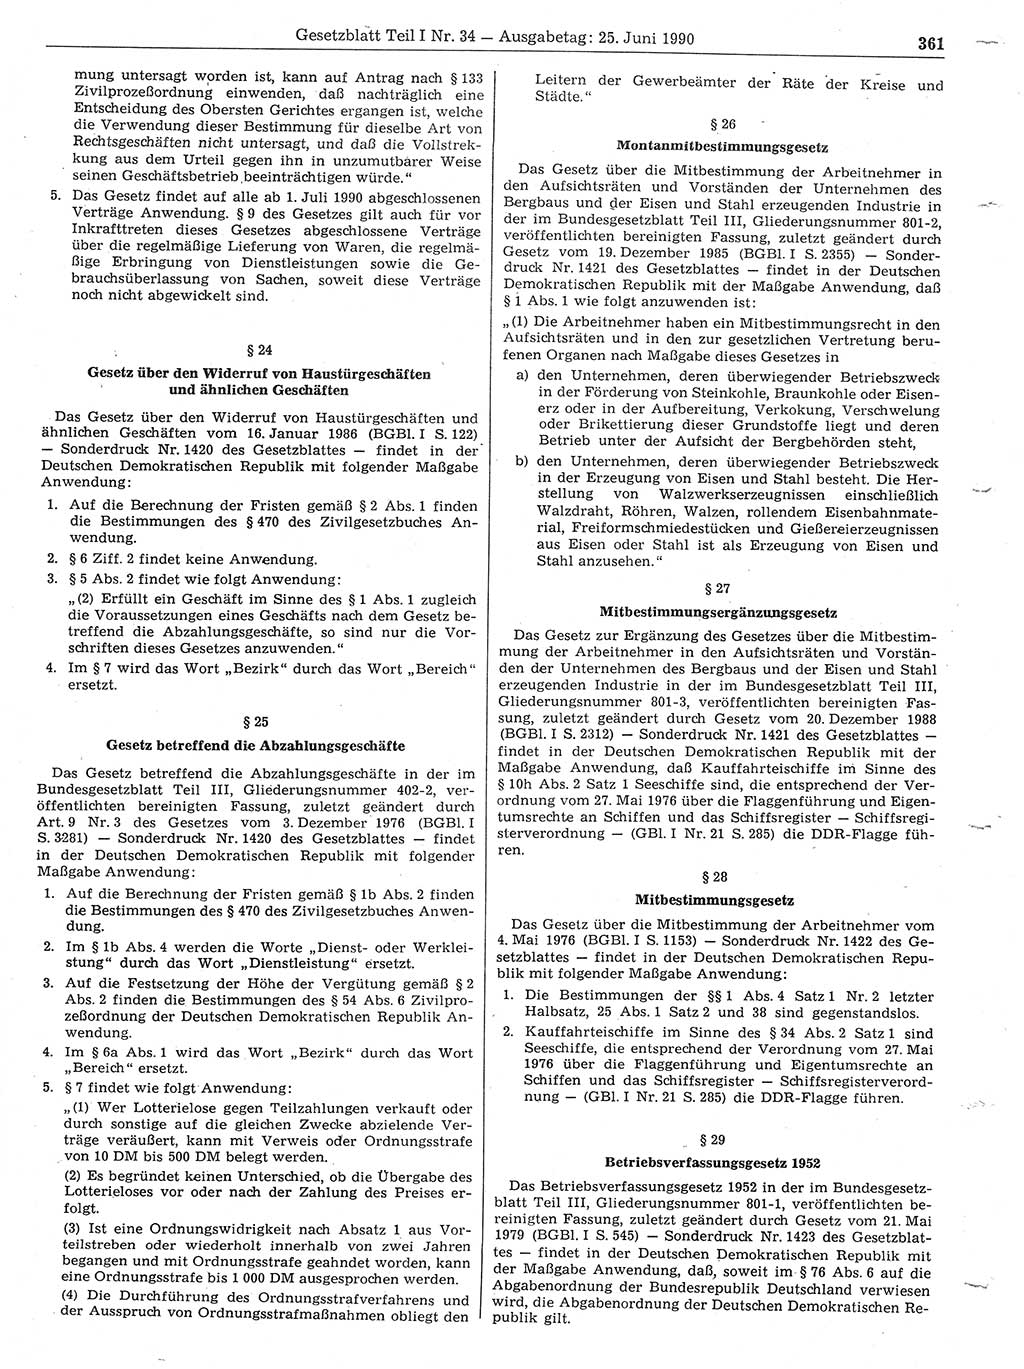 Gesetzblatt (GBl.) der Deutschen Demokratischen Republik (DDR) Teil Ⅰ 1990, Seite 361 (GBl. DDR Ⅰ 1990, S. 361)